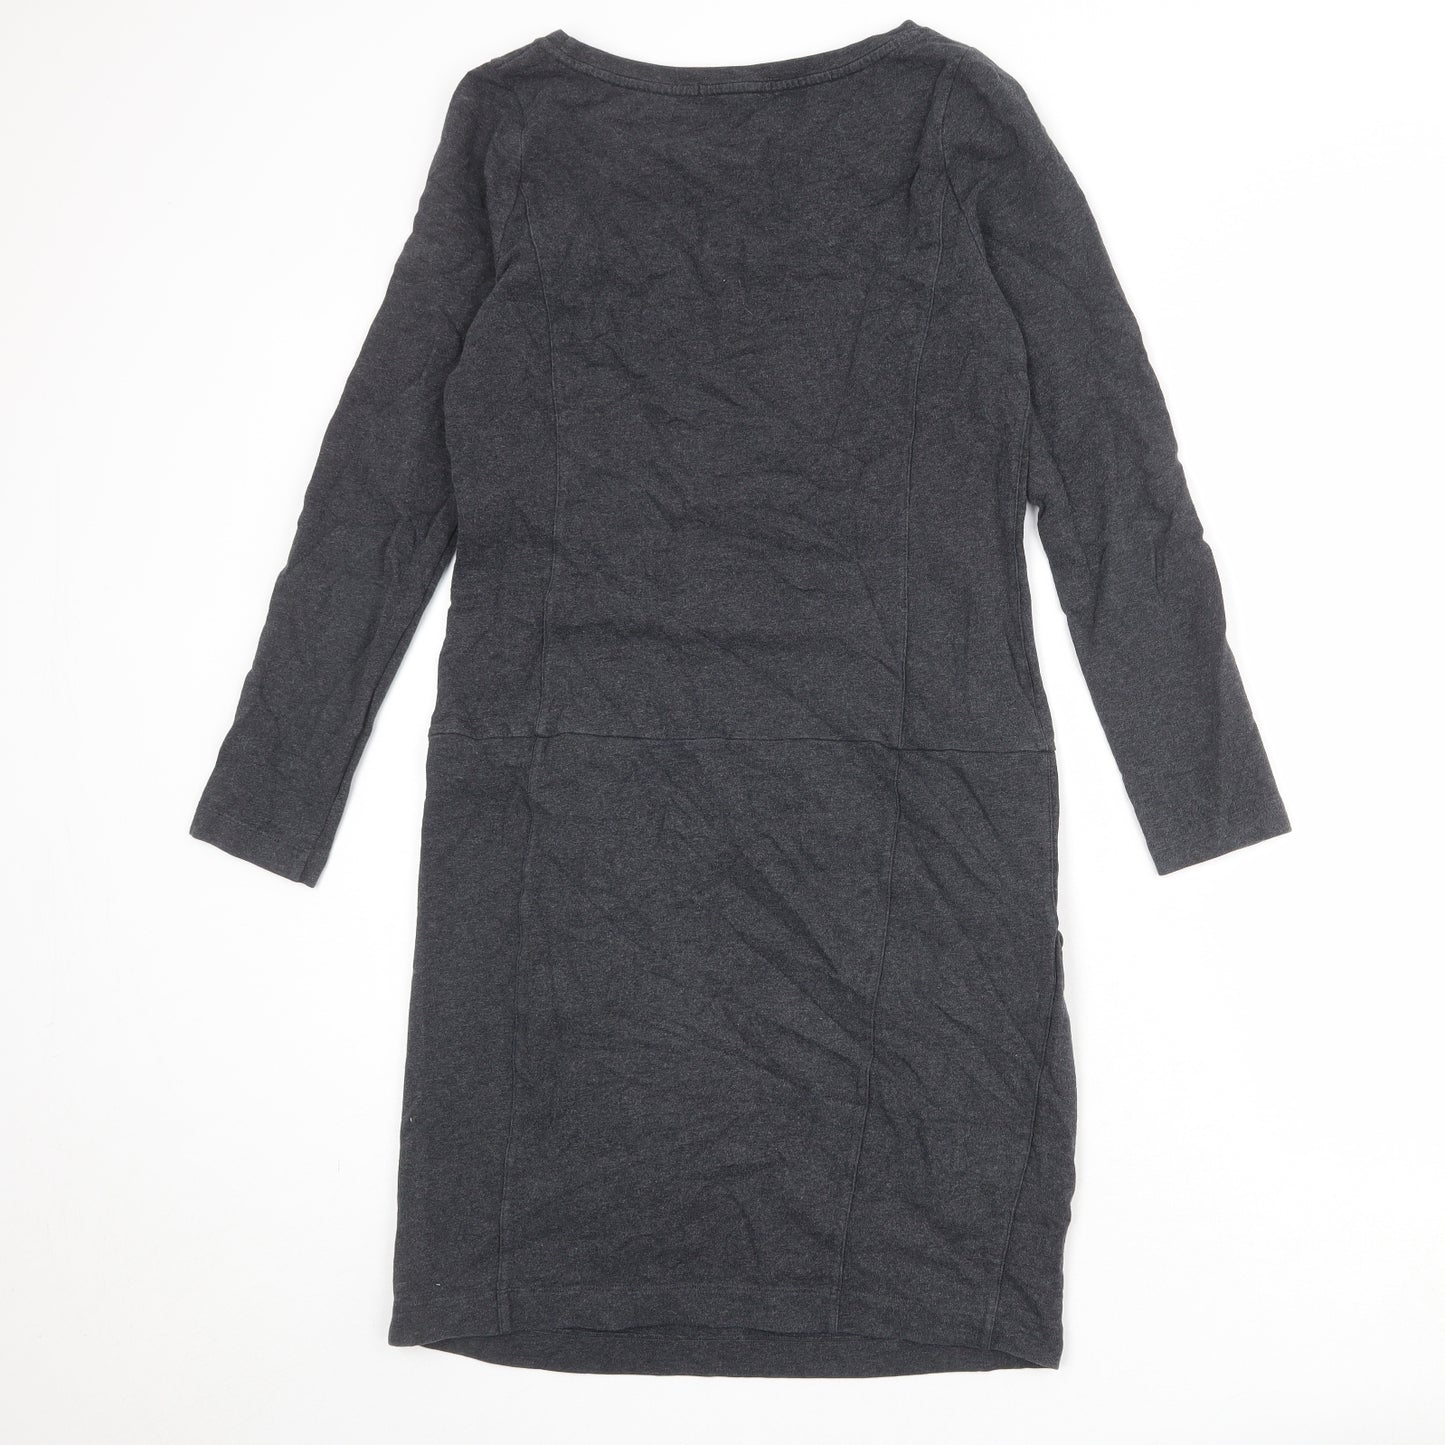 Boden Womens Grey Cotton Jumper Dress Size 8 Round Neck Pullover